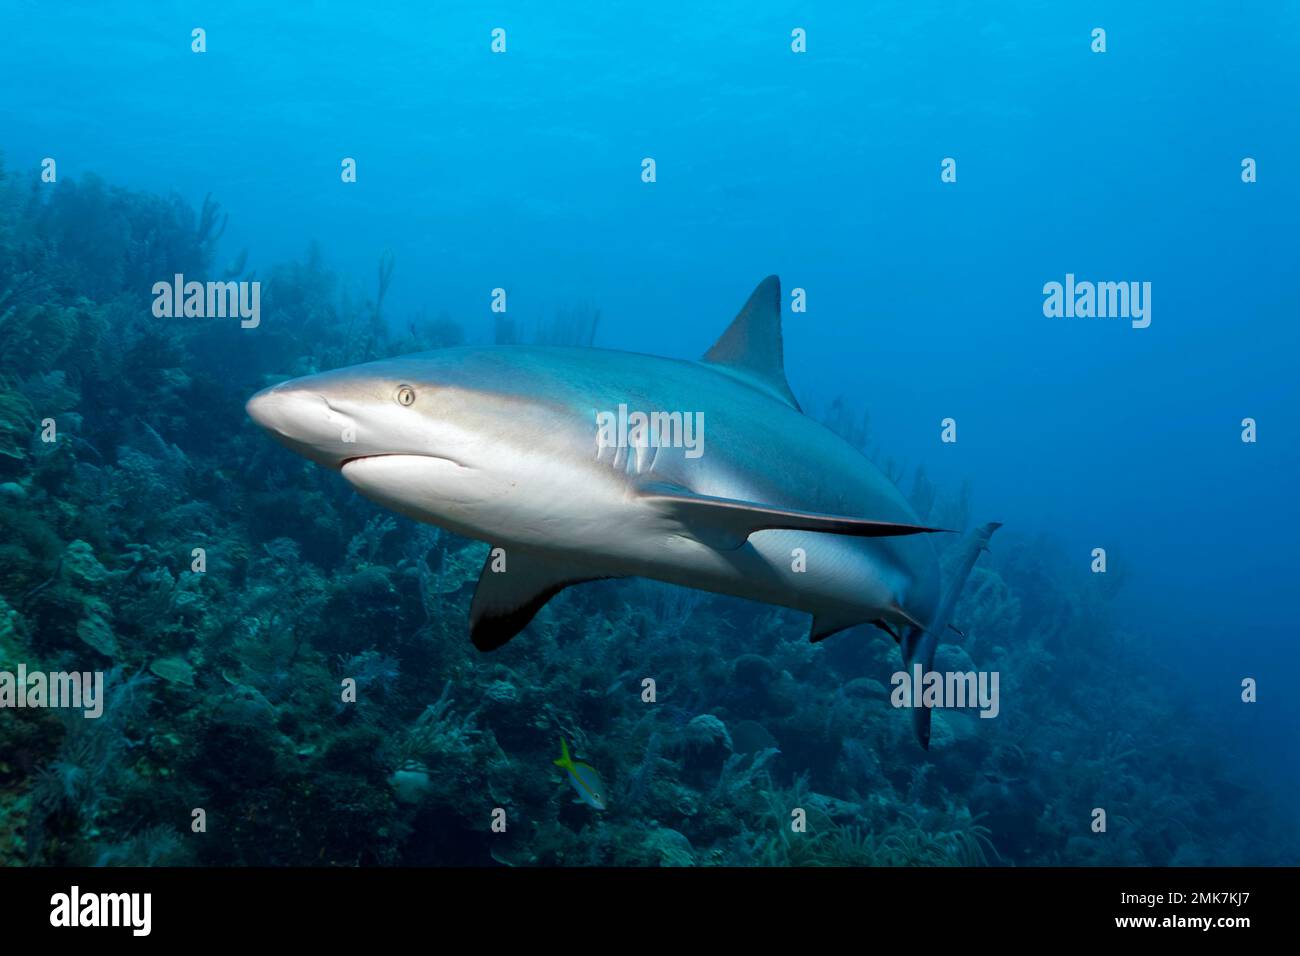 Karibischer Riffhai (Carcharhinus perezi), Schwimmen über Korallenriff, Jardines de la Reina, Karibisches Meer, Republik Kuba, Karibisches Meer Stockfoto